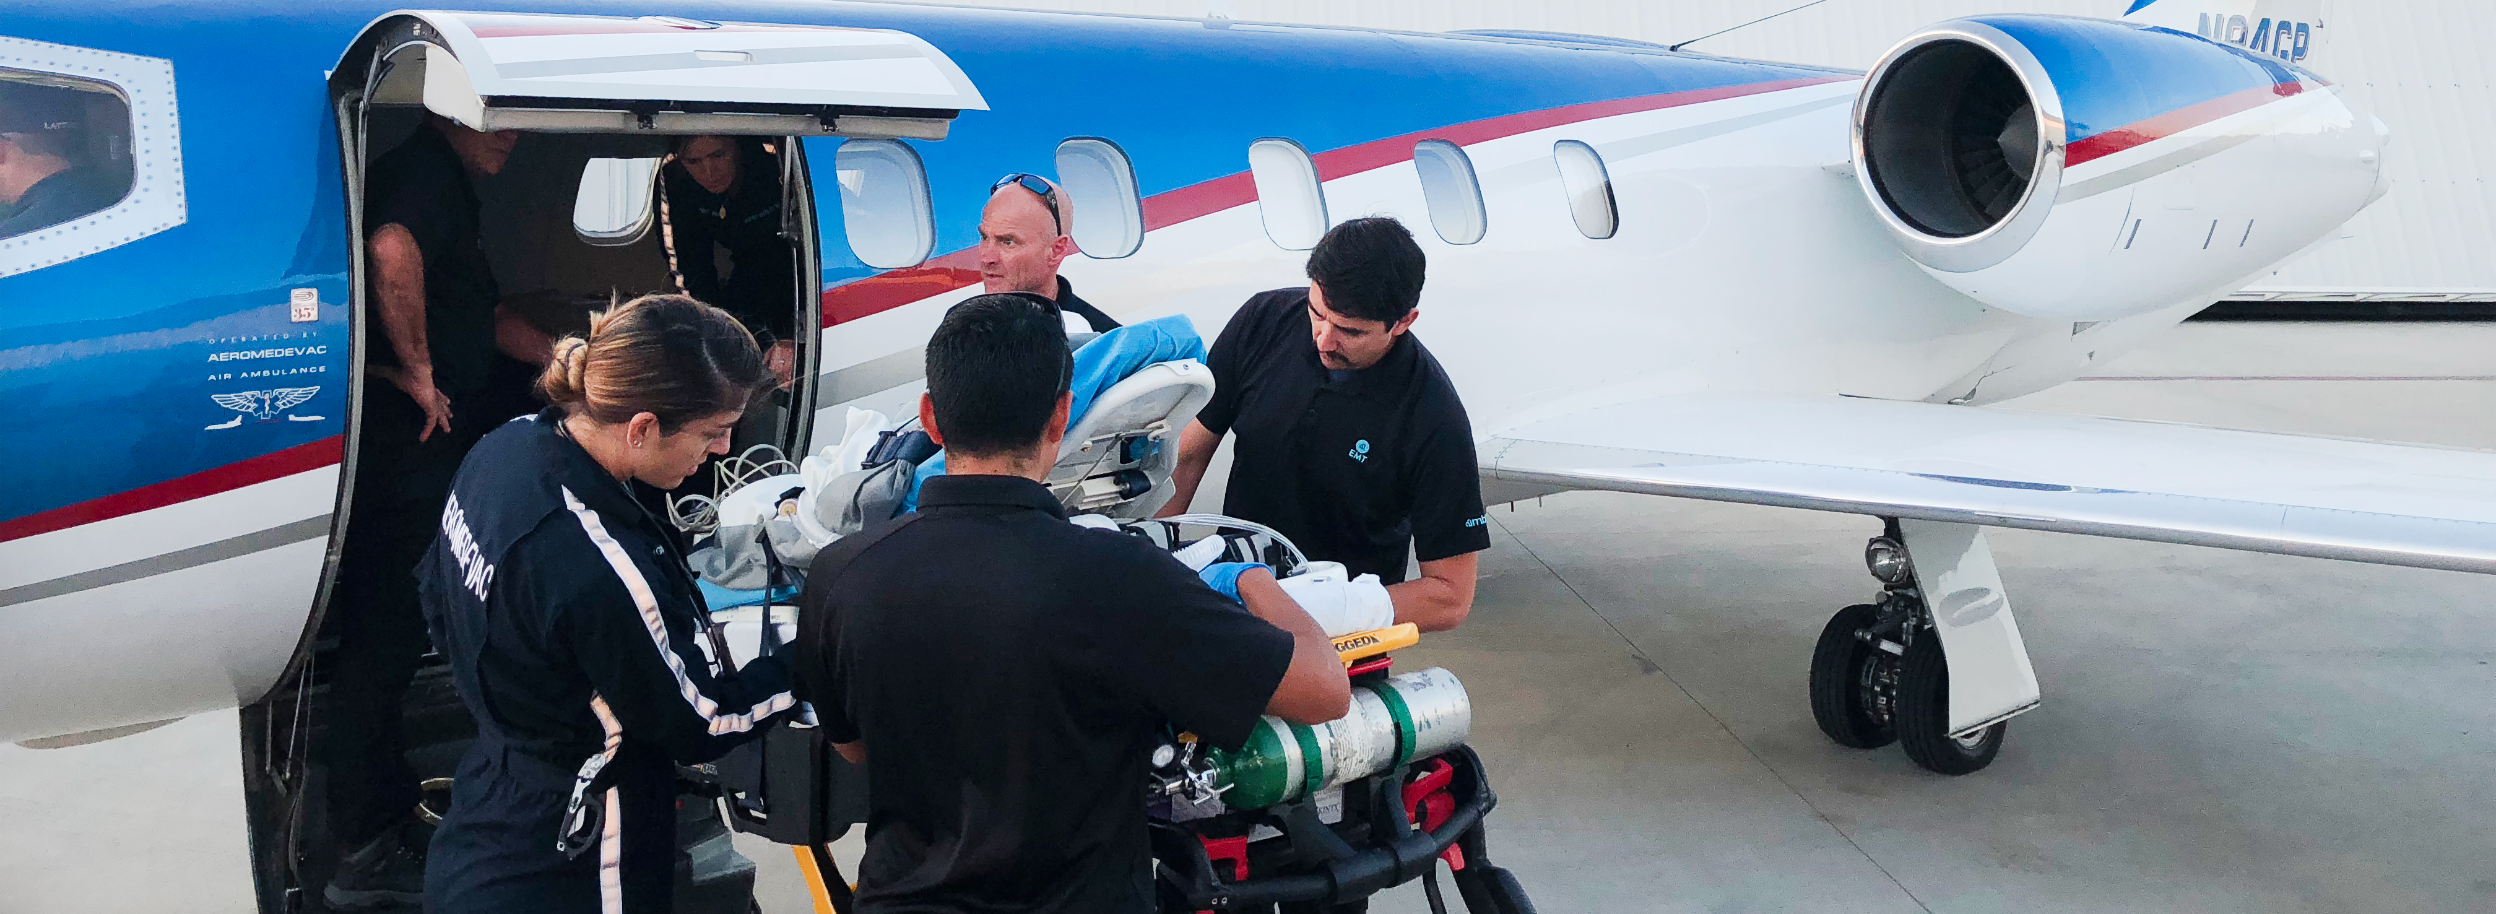 El equipo médico de Aeromedevac prepara a un paciente para embarcar en un avión medicalizado.